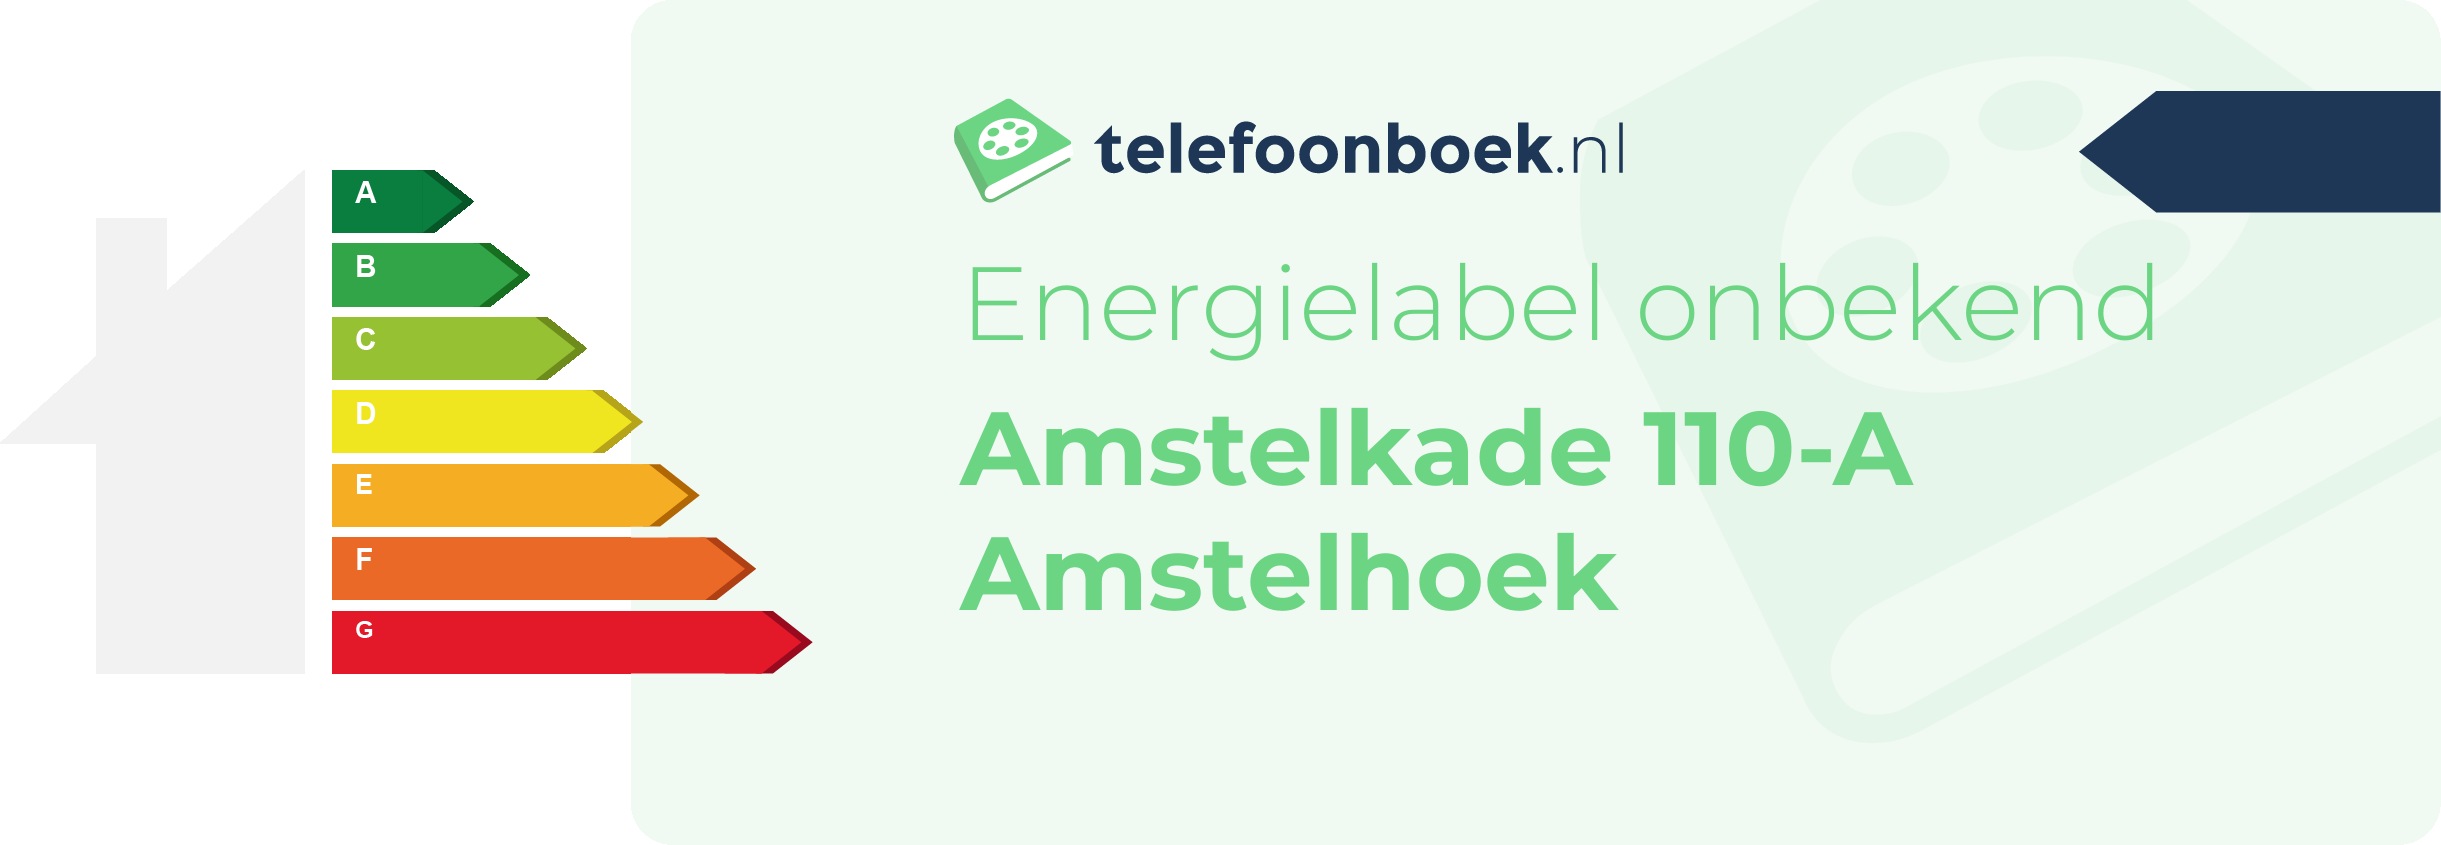 Energielabel Amstelkade 110-A Amstelhoek